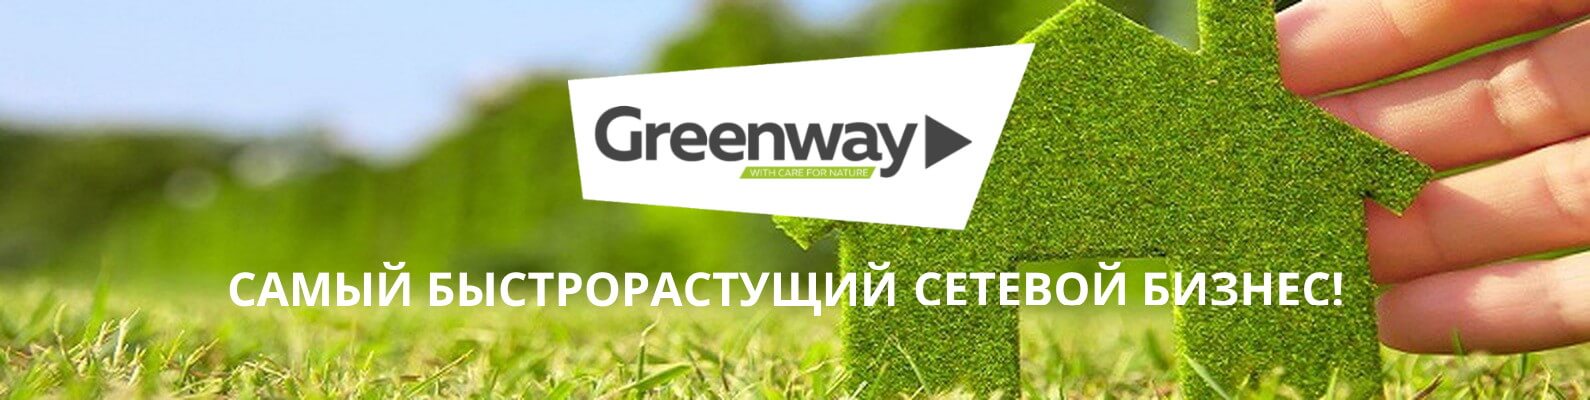 Интернет магазин greenway mygreen mag ru. Гринвей. Гринвей бизнес. Логотип фирмы Гринвей. Эко маркетинг Гринвей.